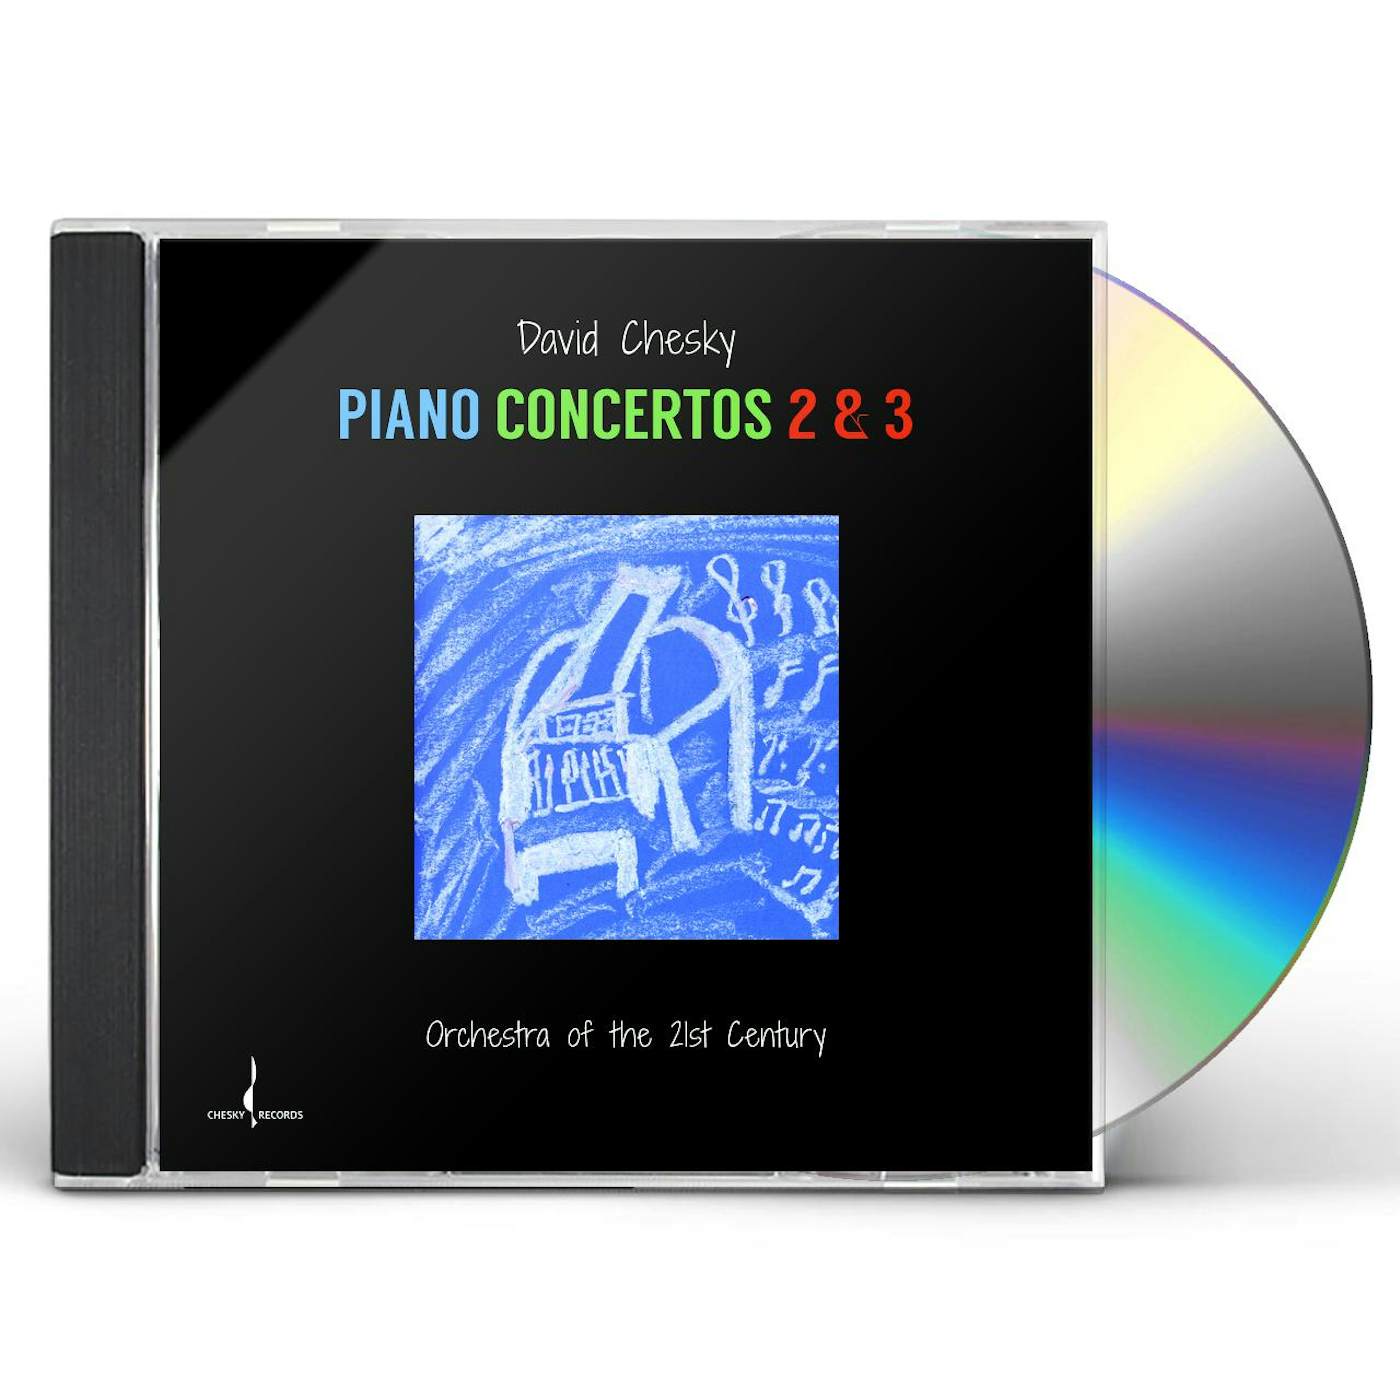 David Chesky PIANO CONCERTOS 2 & 3 CD